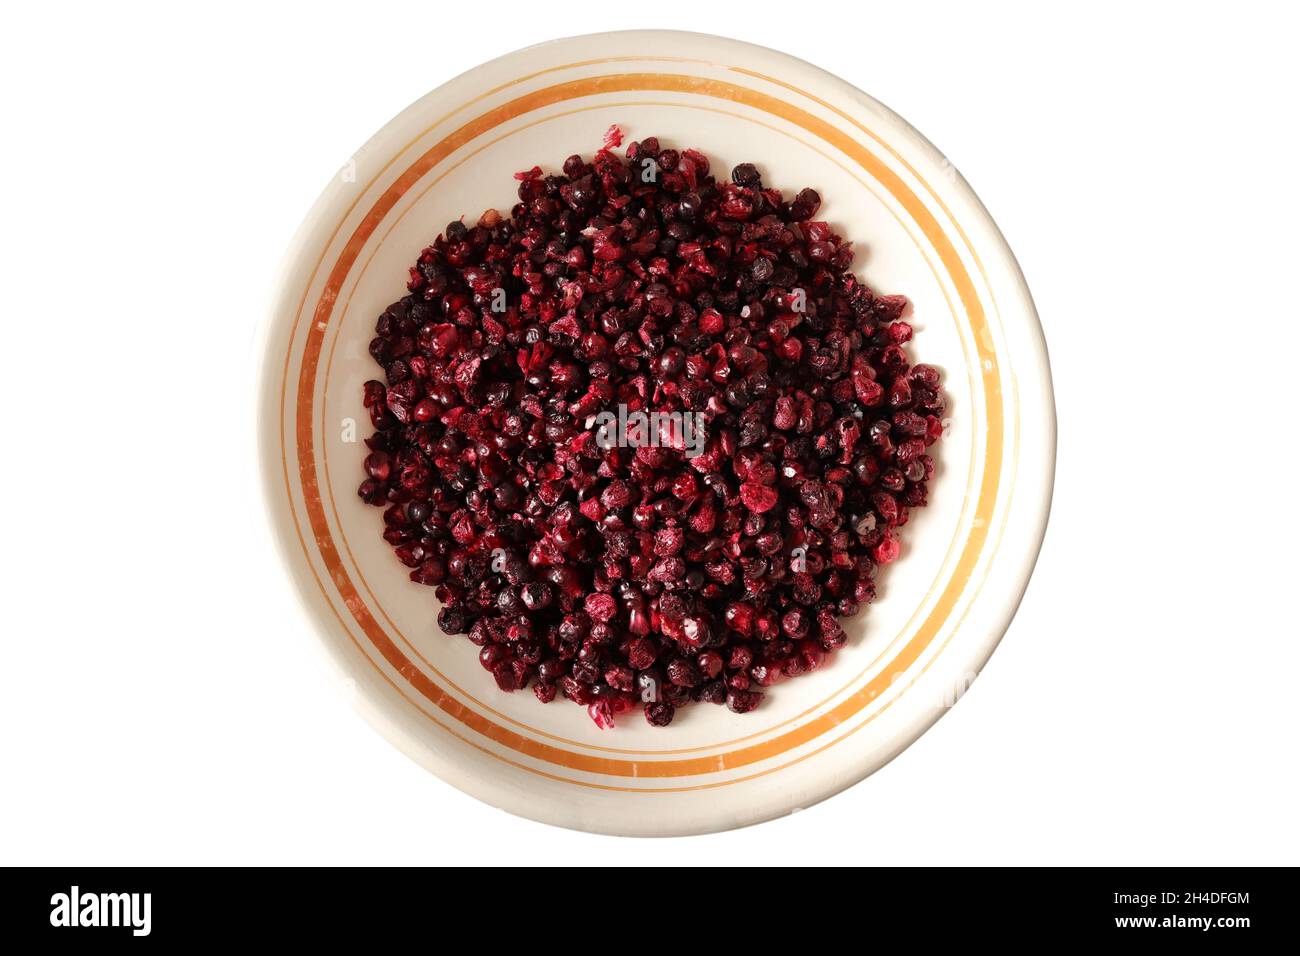 fruta de blackberry granulada y seca congelada Foto de stock